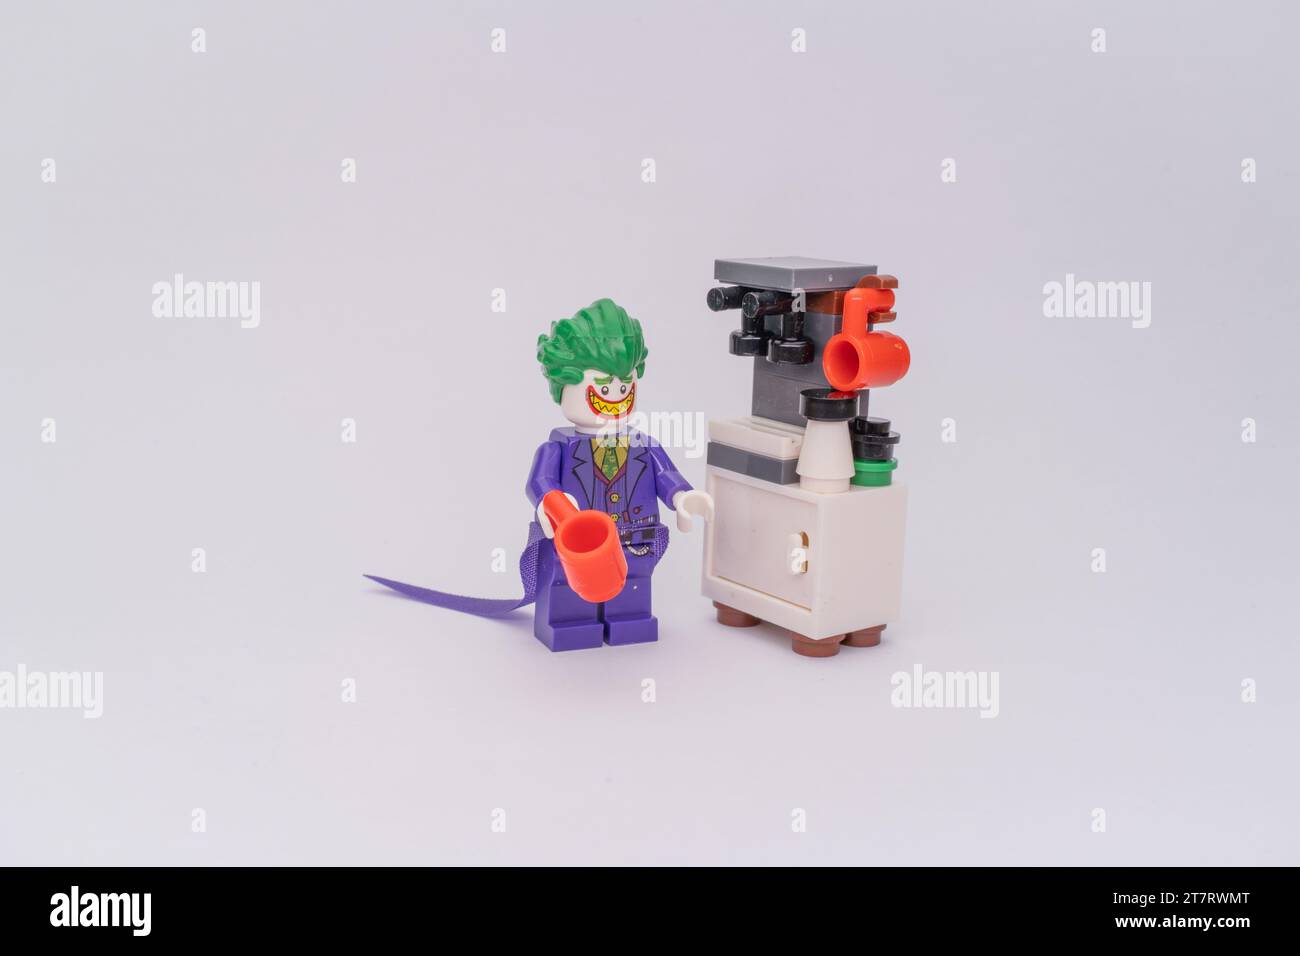 Eine Lego-Figur von Joker, die neben einer Kaffeemaschine aus Lego-Stücken steht. Stockfoto